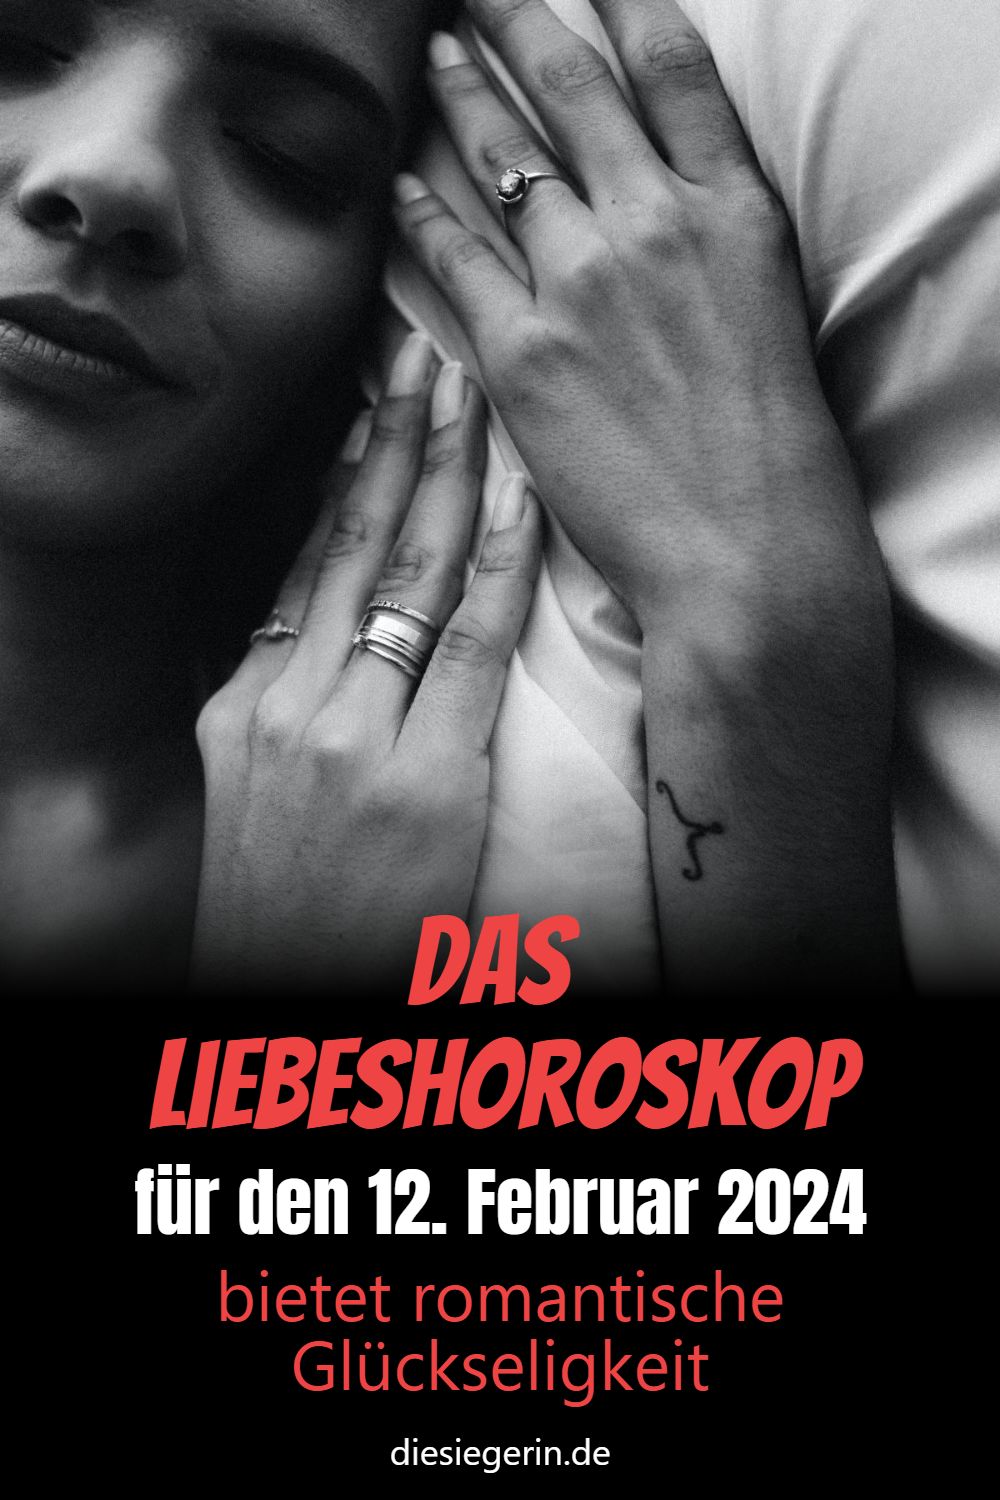 Das Liebeshoroskop für den 12. Februar 2024 bietet romantische Glückseligkeit